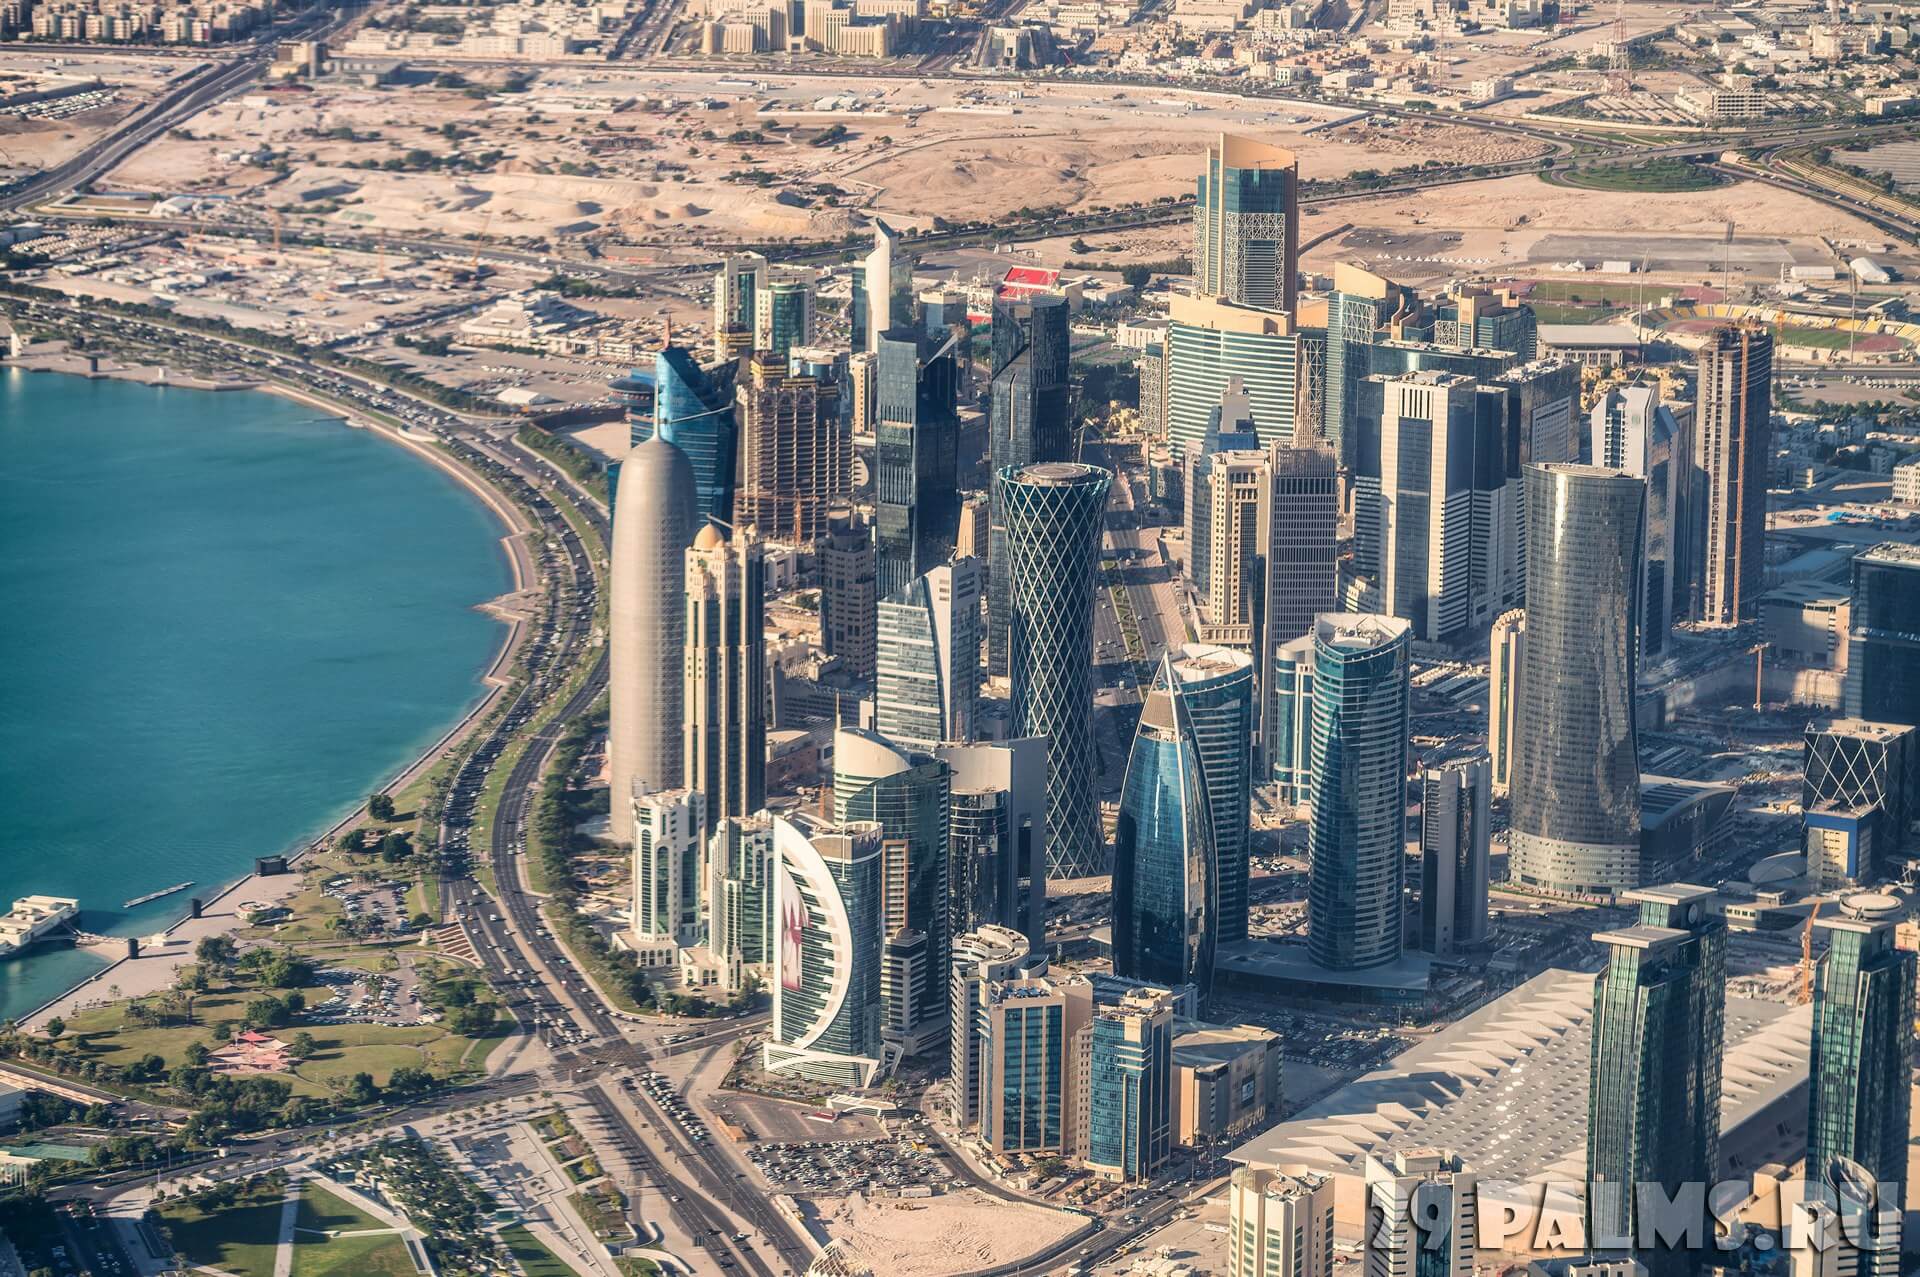 Company Registration in Qatar